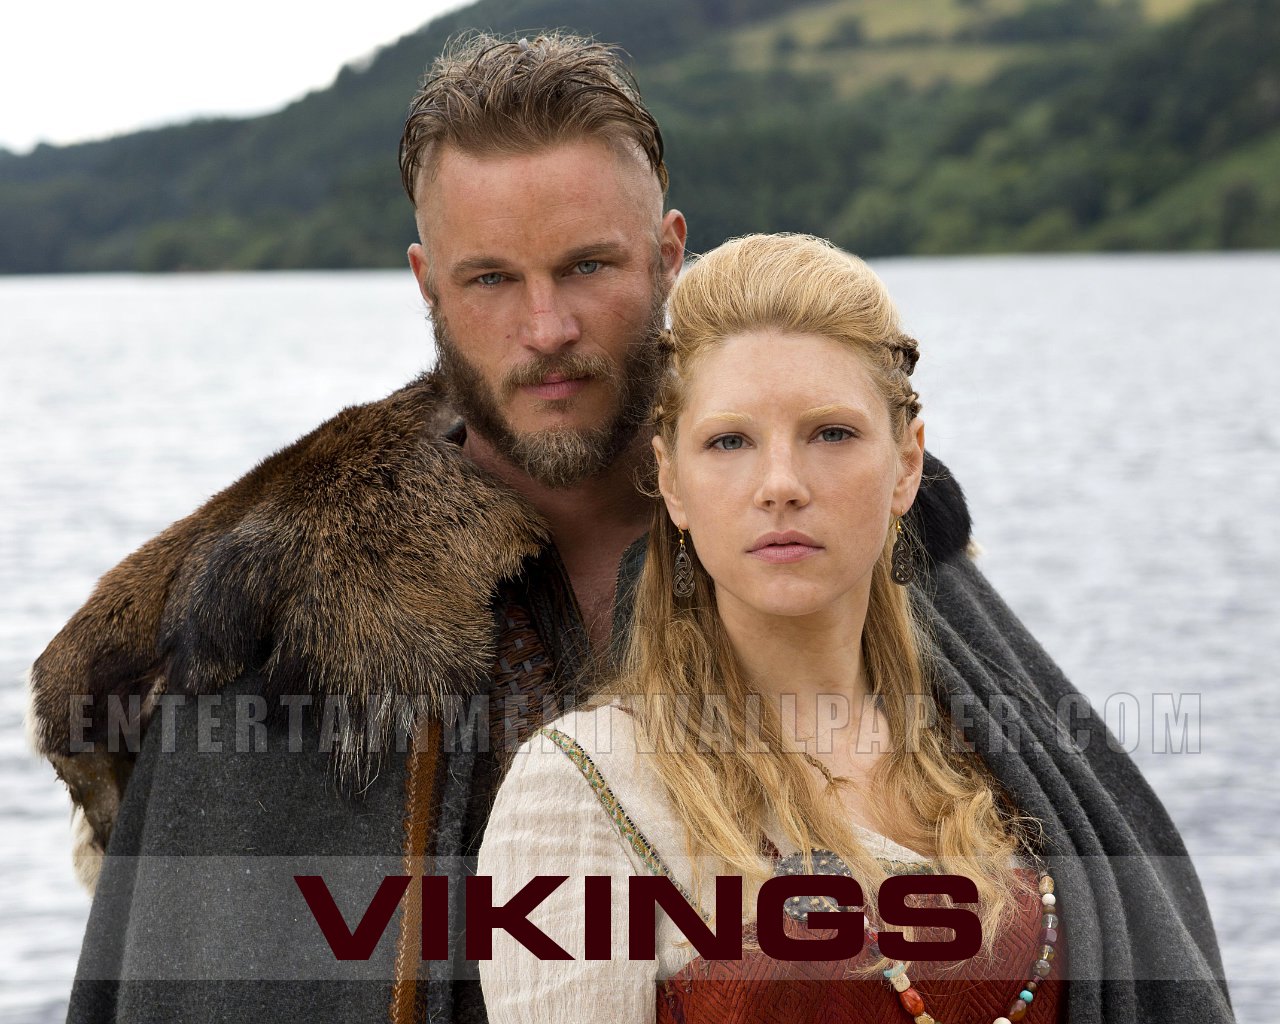 Vikings Tv Series Wallpaper